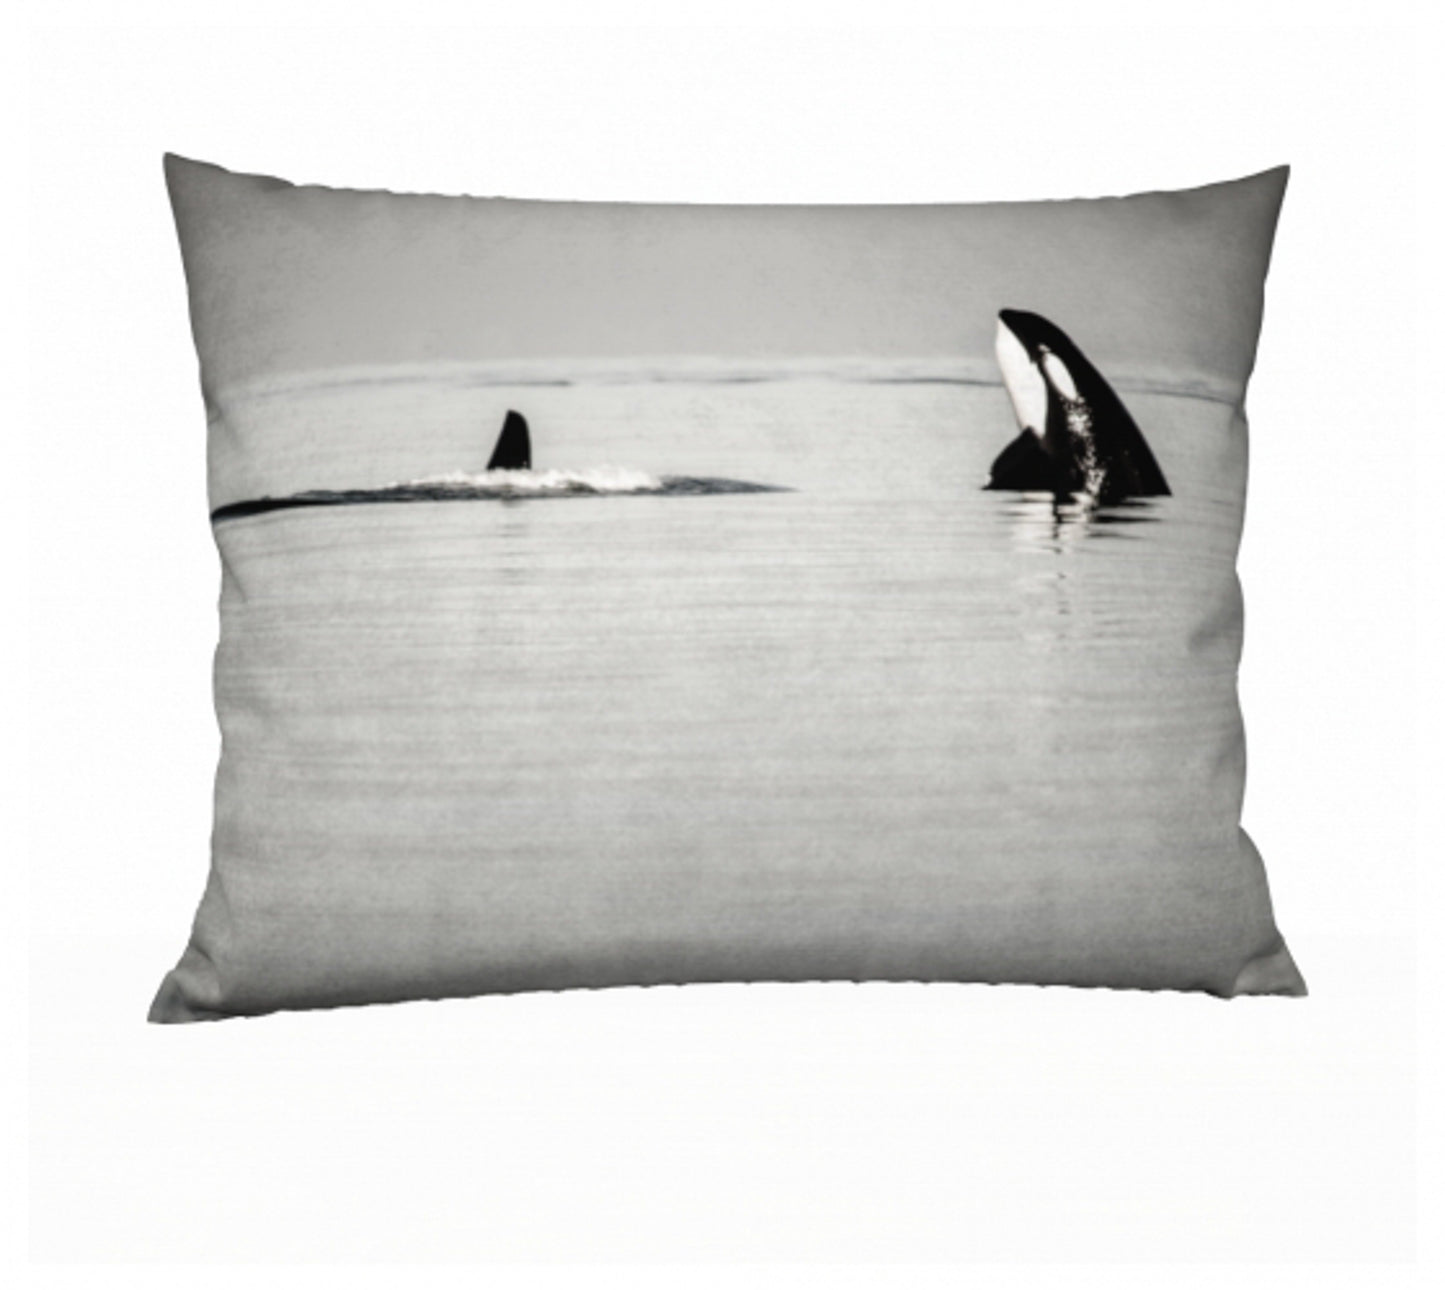 Orca Spy Hop 26" x 20" Pillow Case